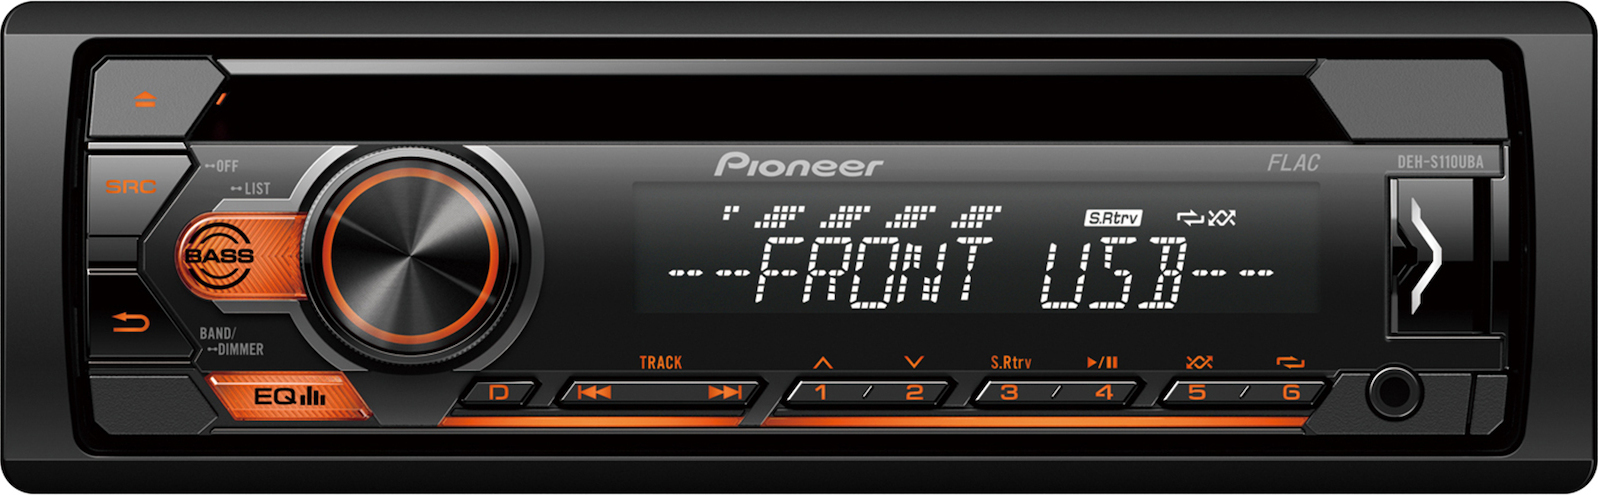 Pioneer DEH-S120UBA Ραδιο-CD με USB νεο μοντέλο πορτοκαλί φωτισμό